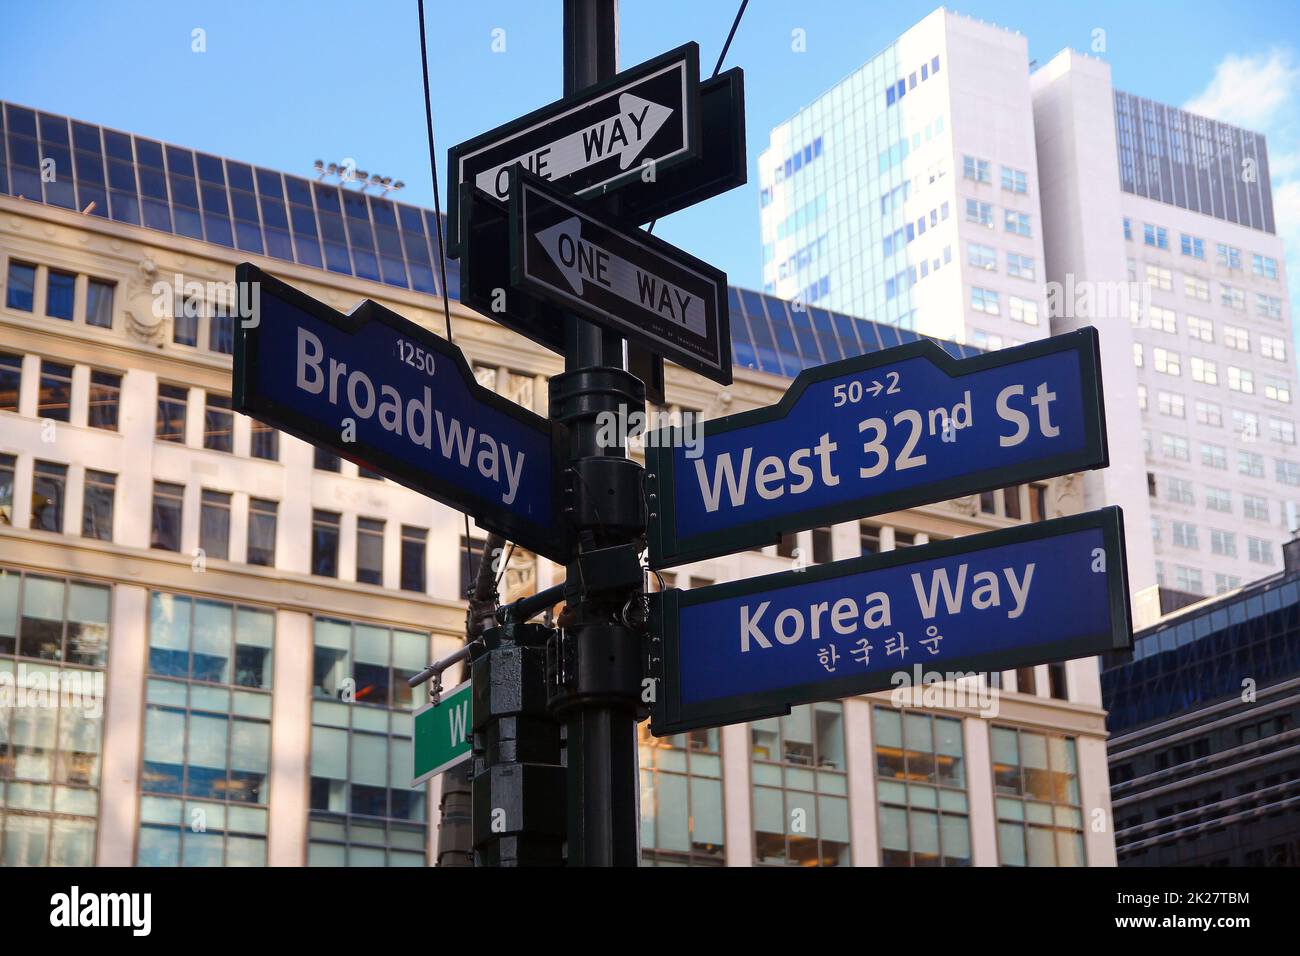 Blue West 32nd Street, Broadway et Korea Way panneau historique Banque D'Images